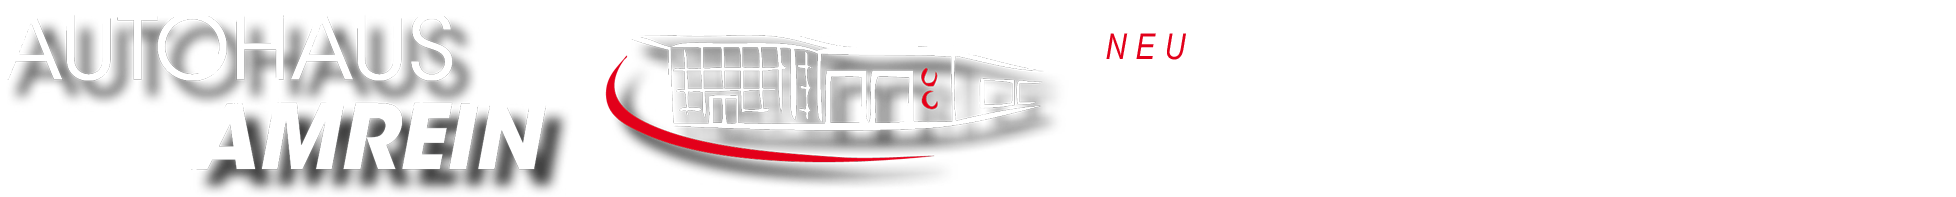 Autohaus Amrein GmbH & Co. KG aus Lahnstein